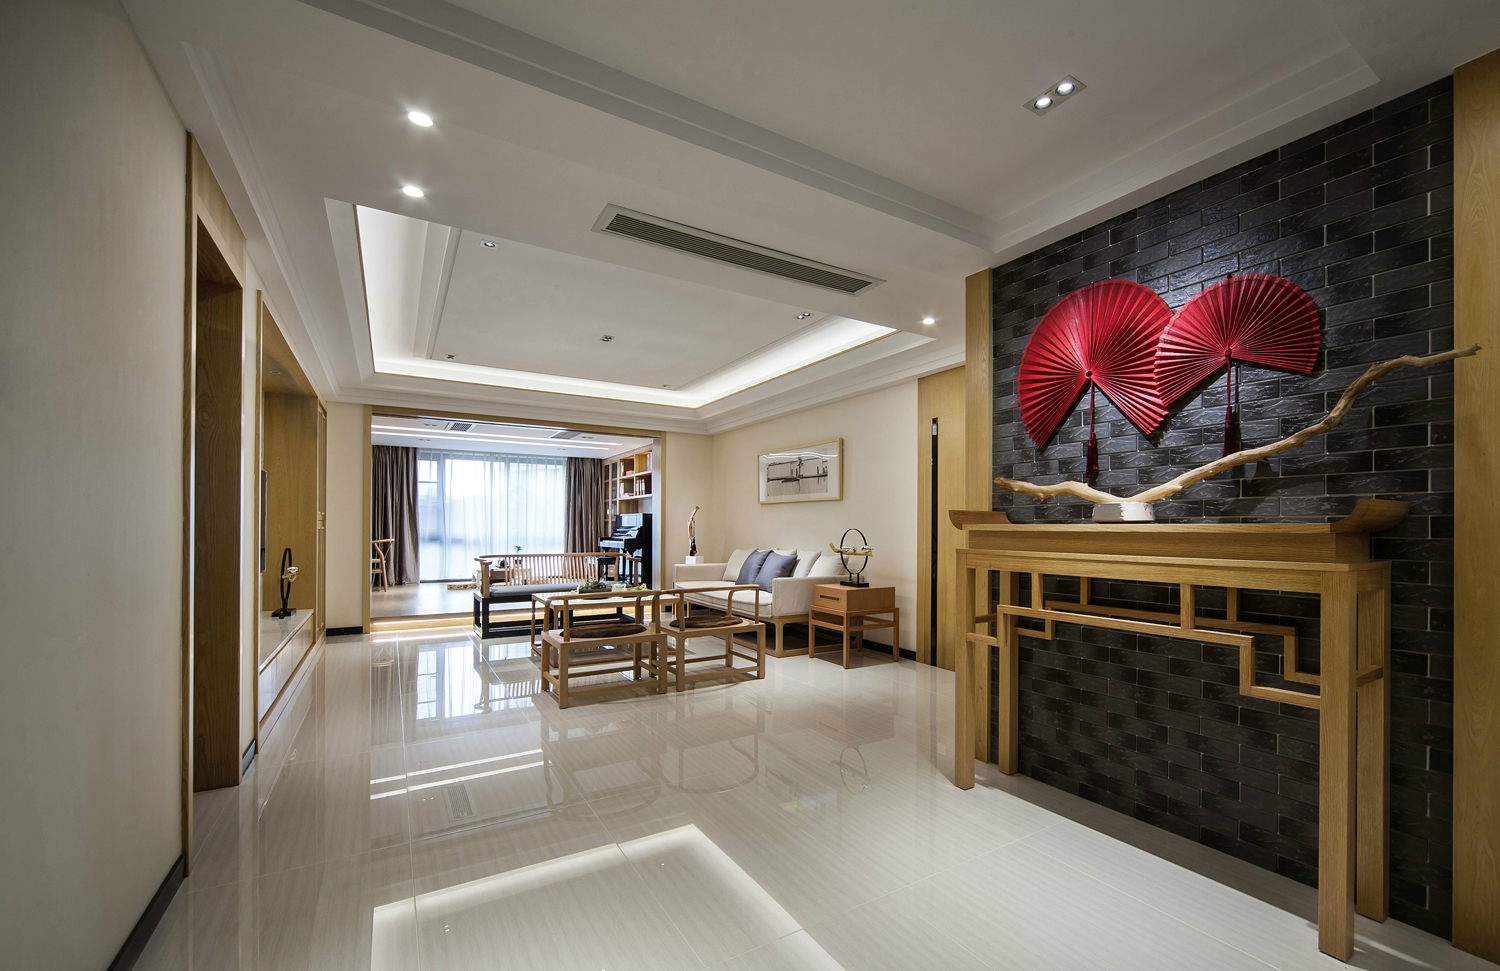 客厅-奢华大气的新中式装修效果图。提取中国风融合现代设计理念